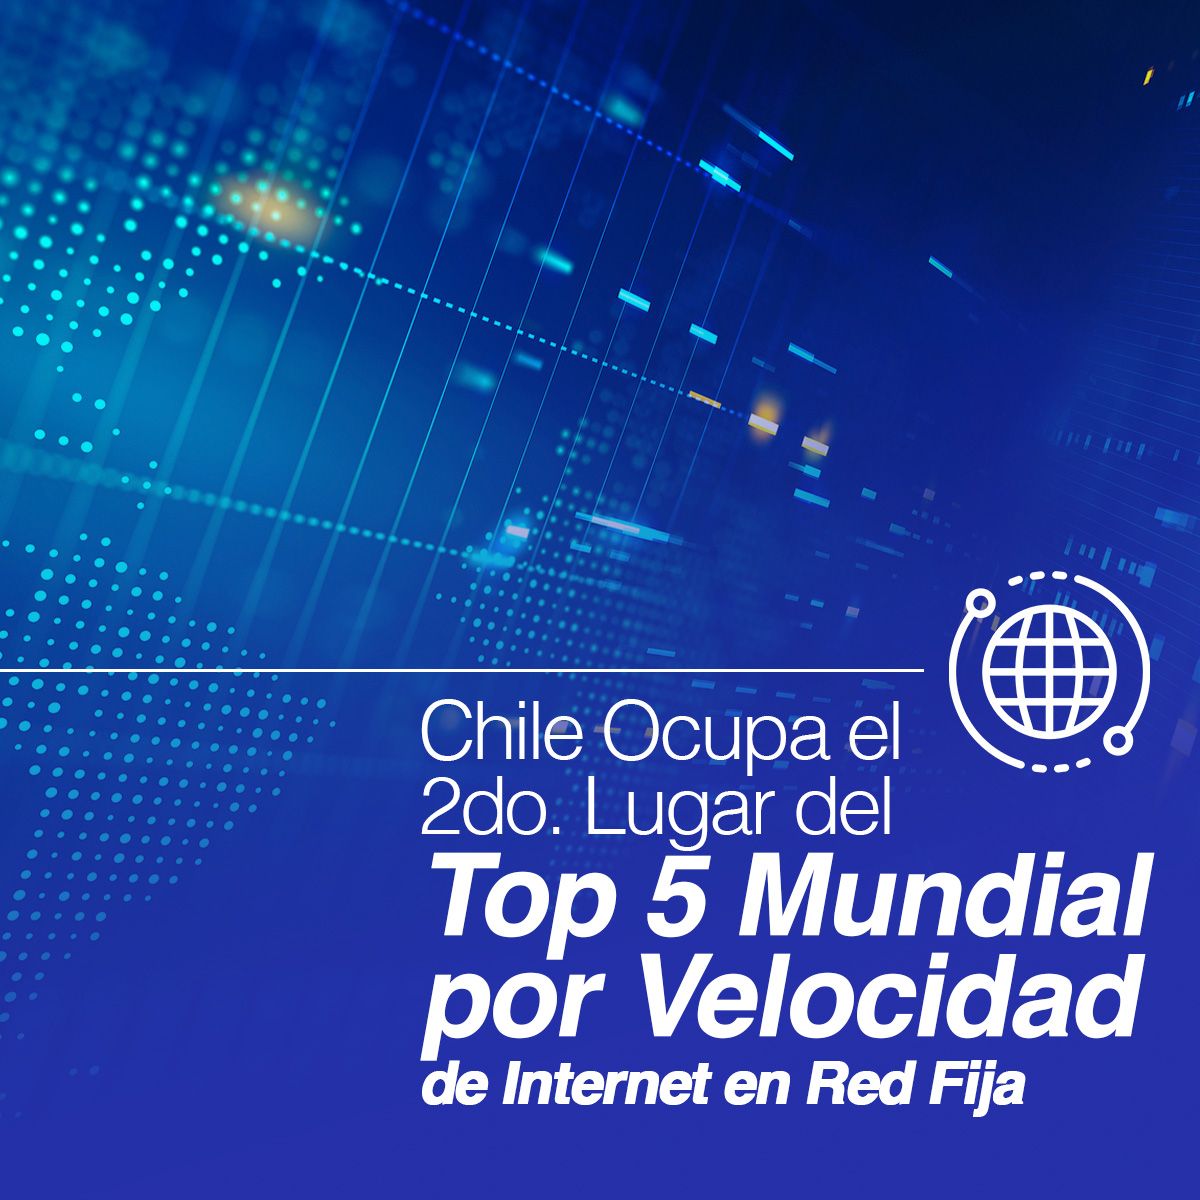 Chile Ocupa el 2do. Lugar del Top 5 Mundial por Velocidad de Internet en Red Fija